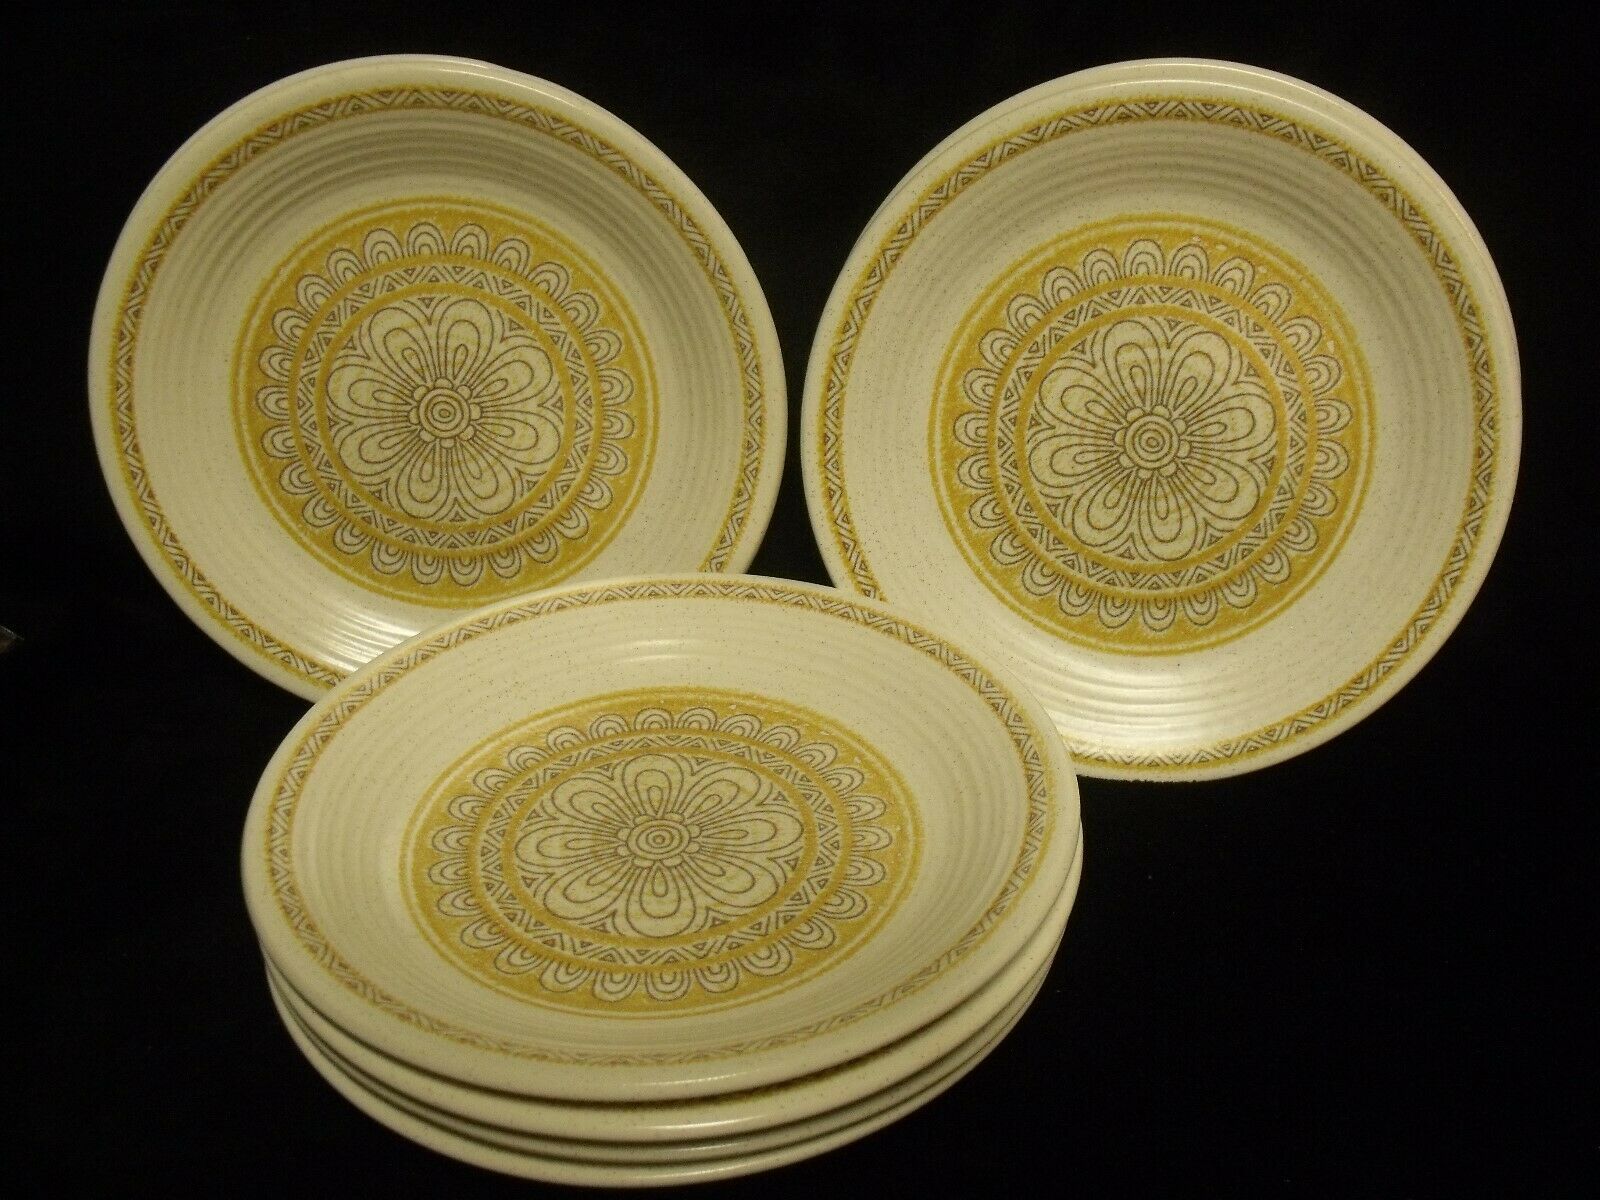 Franciscan Vintage Bread Butter Plate 6 3//8in Floral Desert Rose USA Earthenware